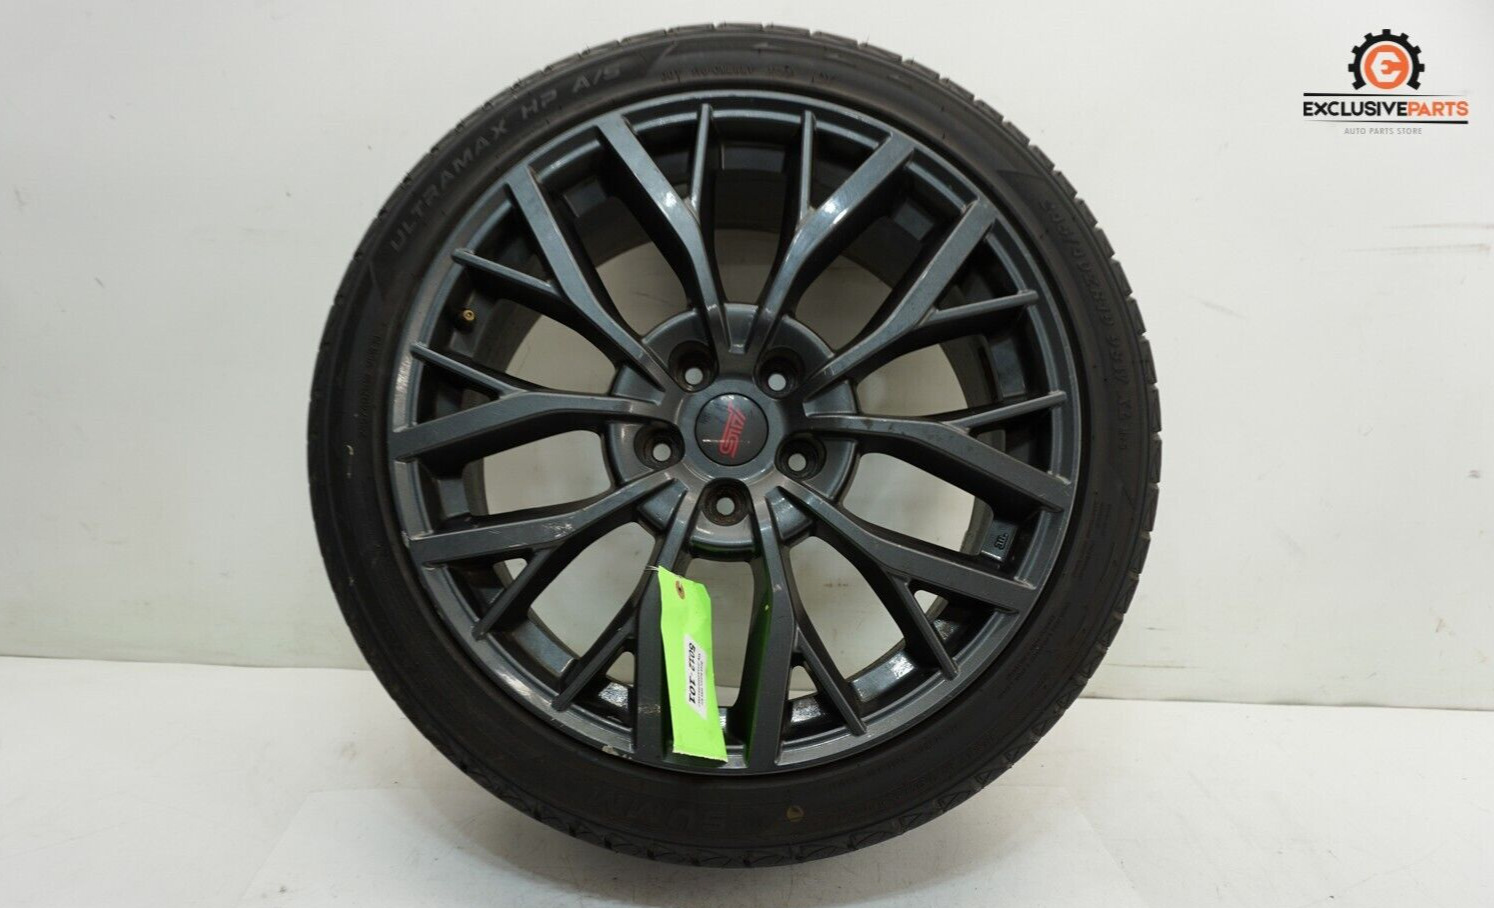 15-21 Subaru WRX STI OEM Wheel Rim Tire ULTRAMAX HP A/S 245/40ZR19 98W XL 5012